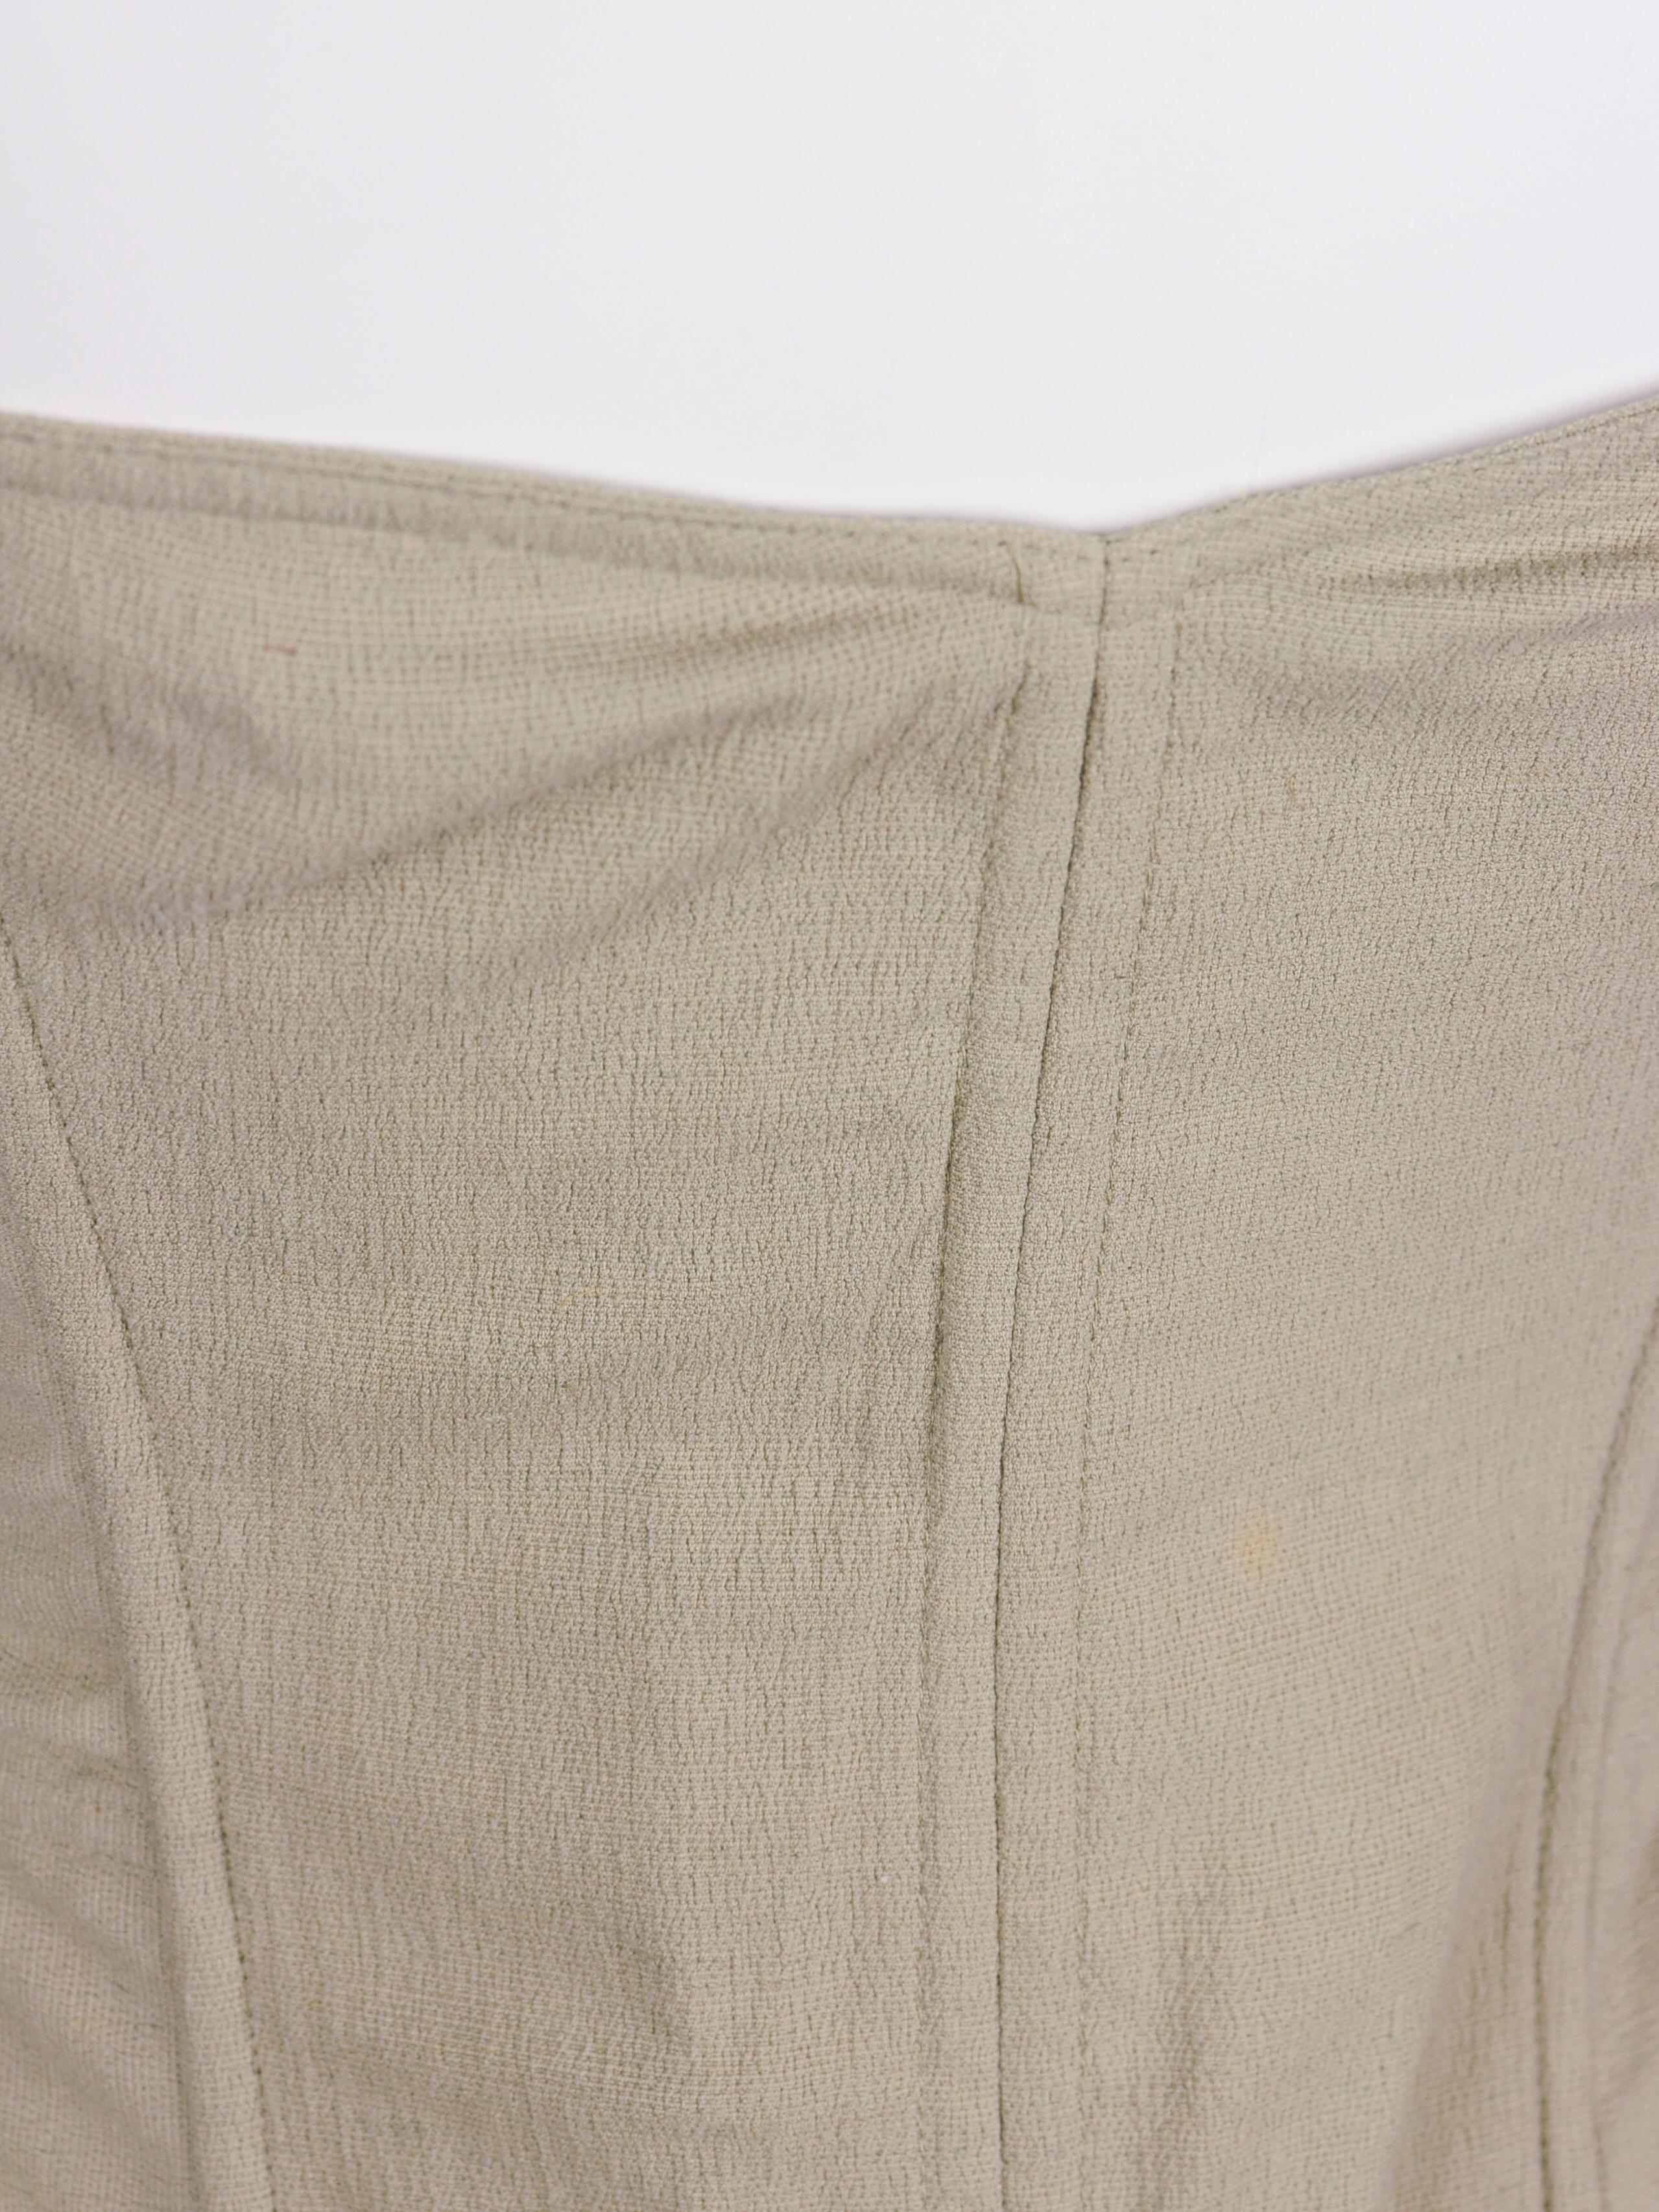 Women's La Perla Corset NWT Deadstock Beige Linen Blend Zipper Peplum Shape 1990s For Sale